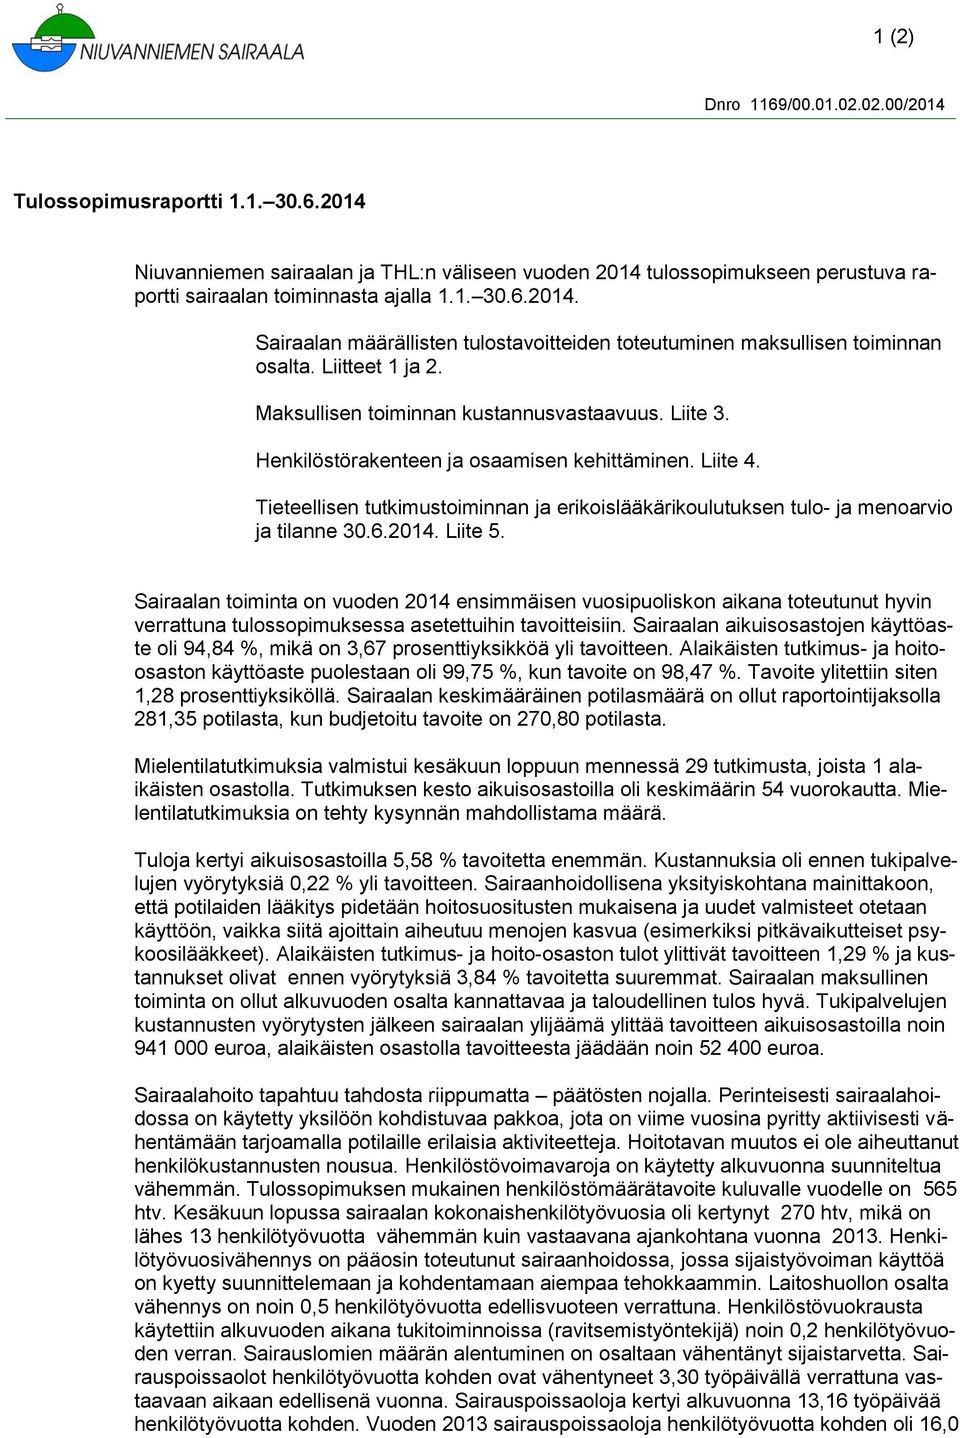 Tieteellisen tutkimustoiminnan ja erikoislääkärikoulutuksen tulo- ja menoarvio ja tilanne 30.6.2014. Liite 5.